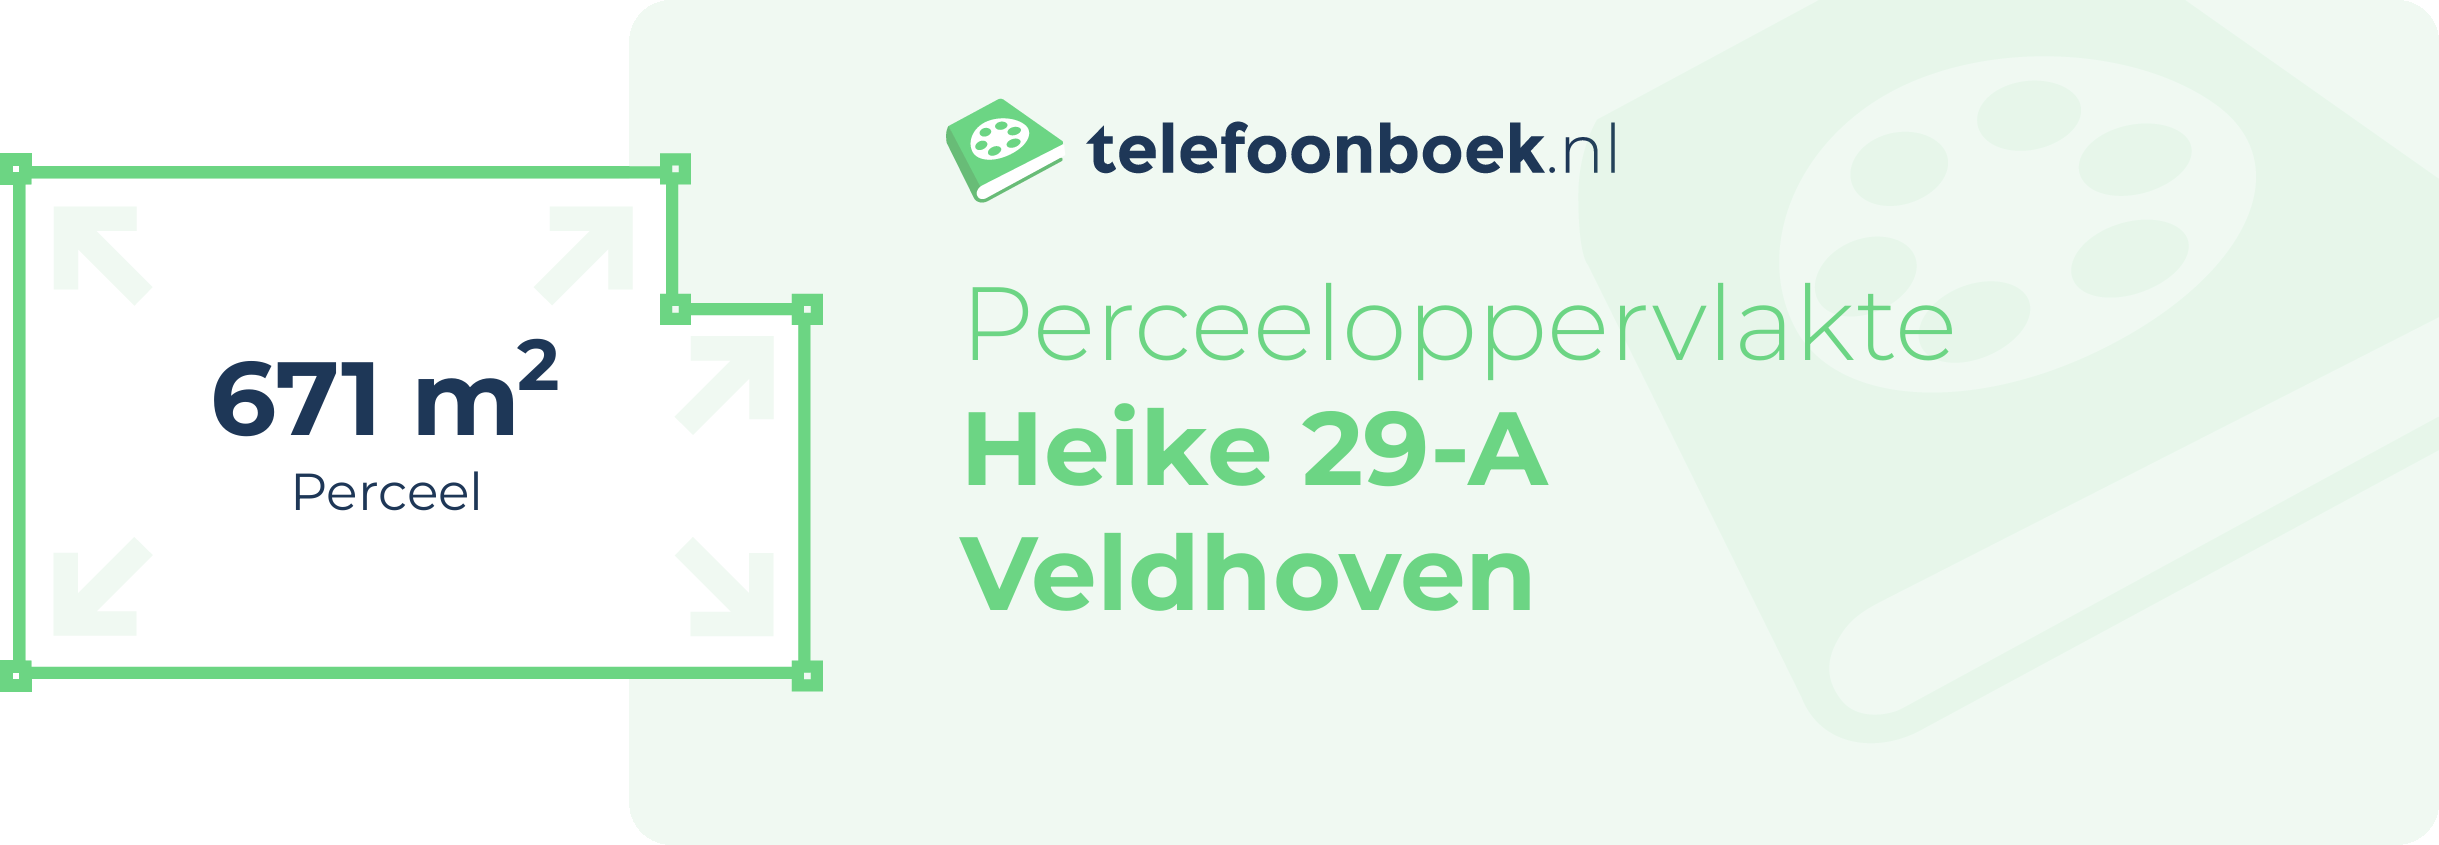 Perceeloppervlakte Heike 29-A Veldhoven